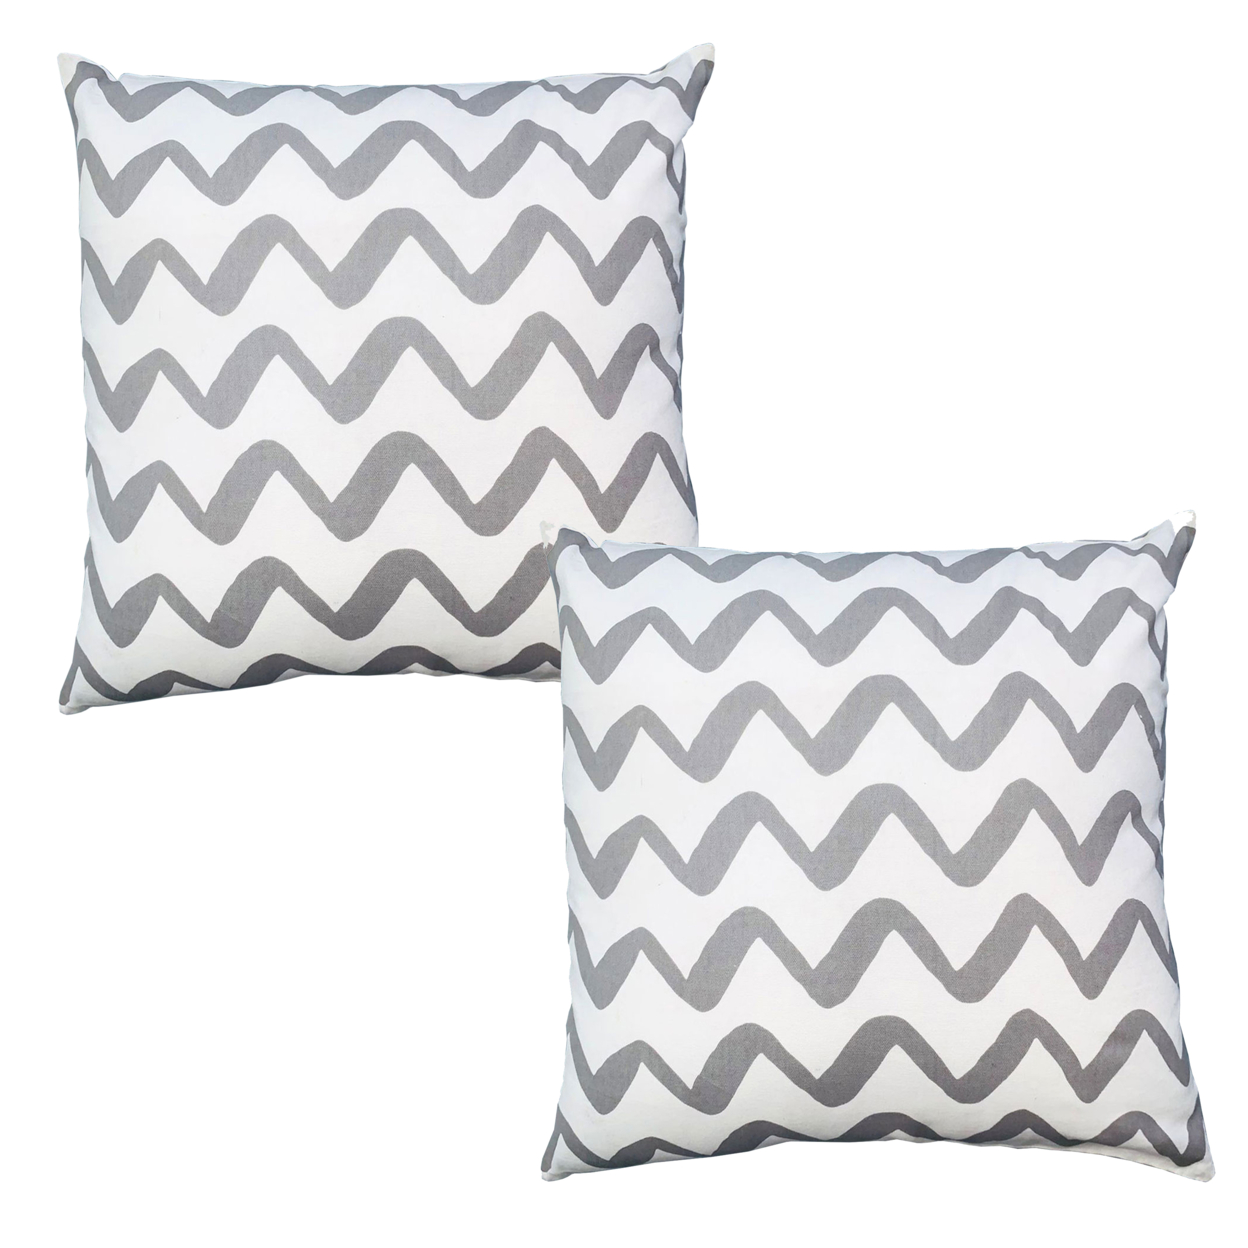 20 X 20 Square Cotton Accent Throw Pillows, Chevron Pattern, Set Of 2, Gray, White